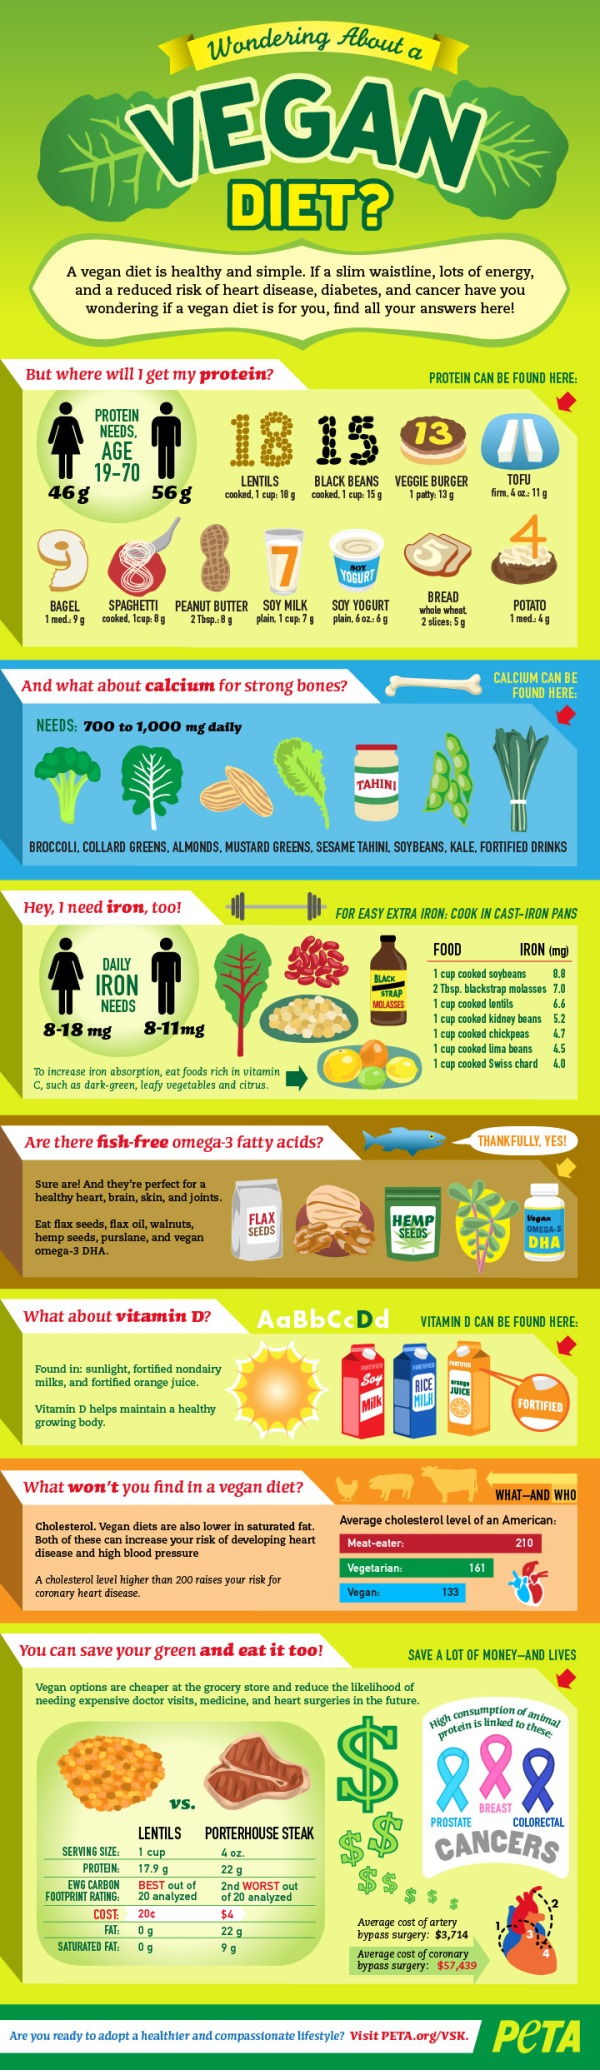 Wondering About a Vegan Diet?